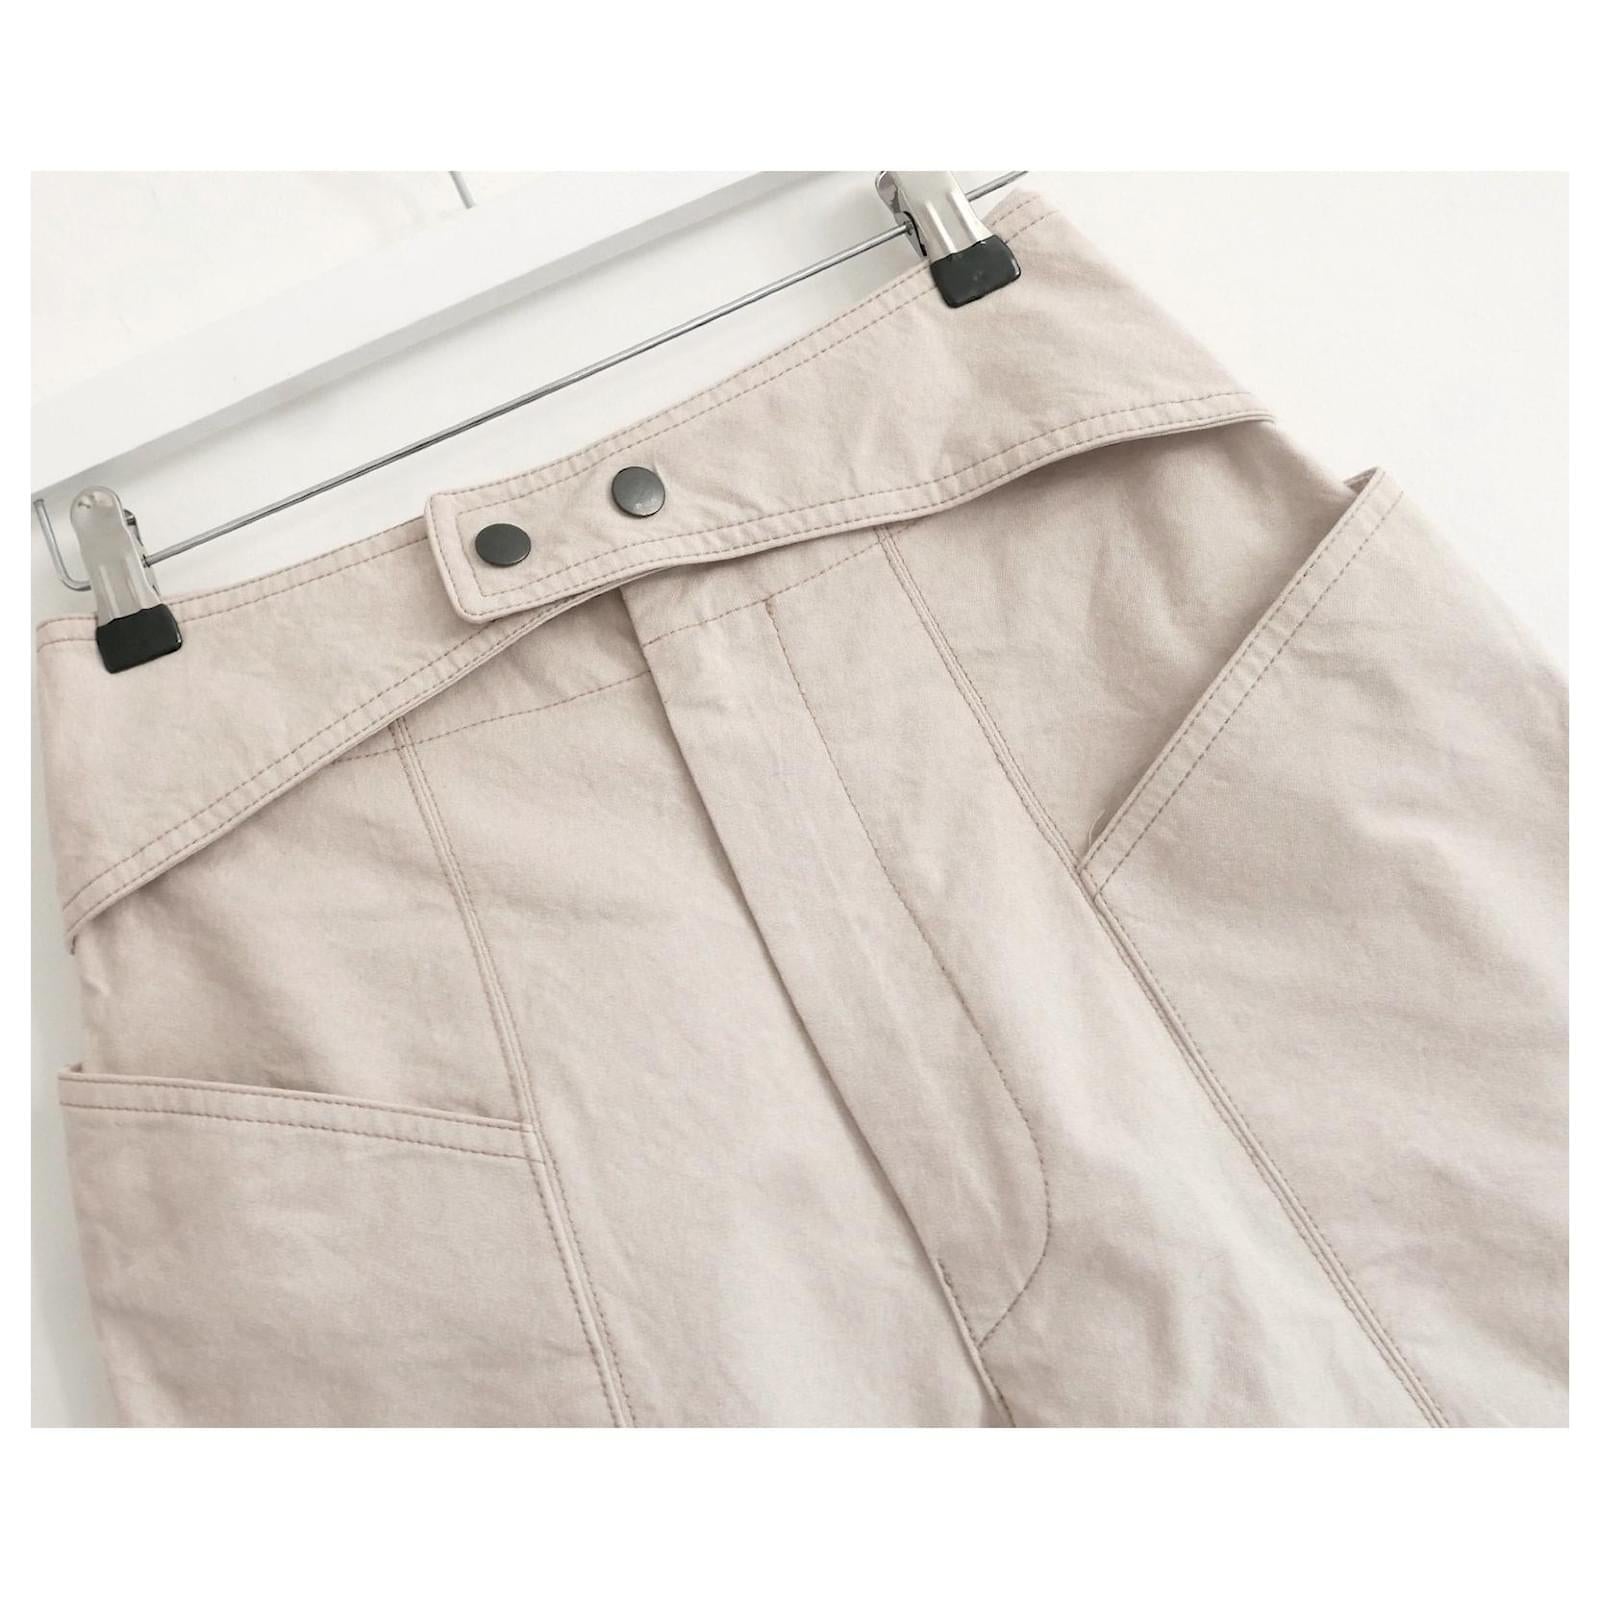 Pantalon de style jodhpur Isabel Marant super cool. Porté une fois et livré avec un bouton de rechange. Réalisé en coton beige doux, il présente une taille haute avec un détail de ceinture croisée, de grandes poches et des jambes fuselées. Taille